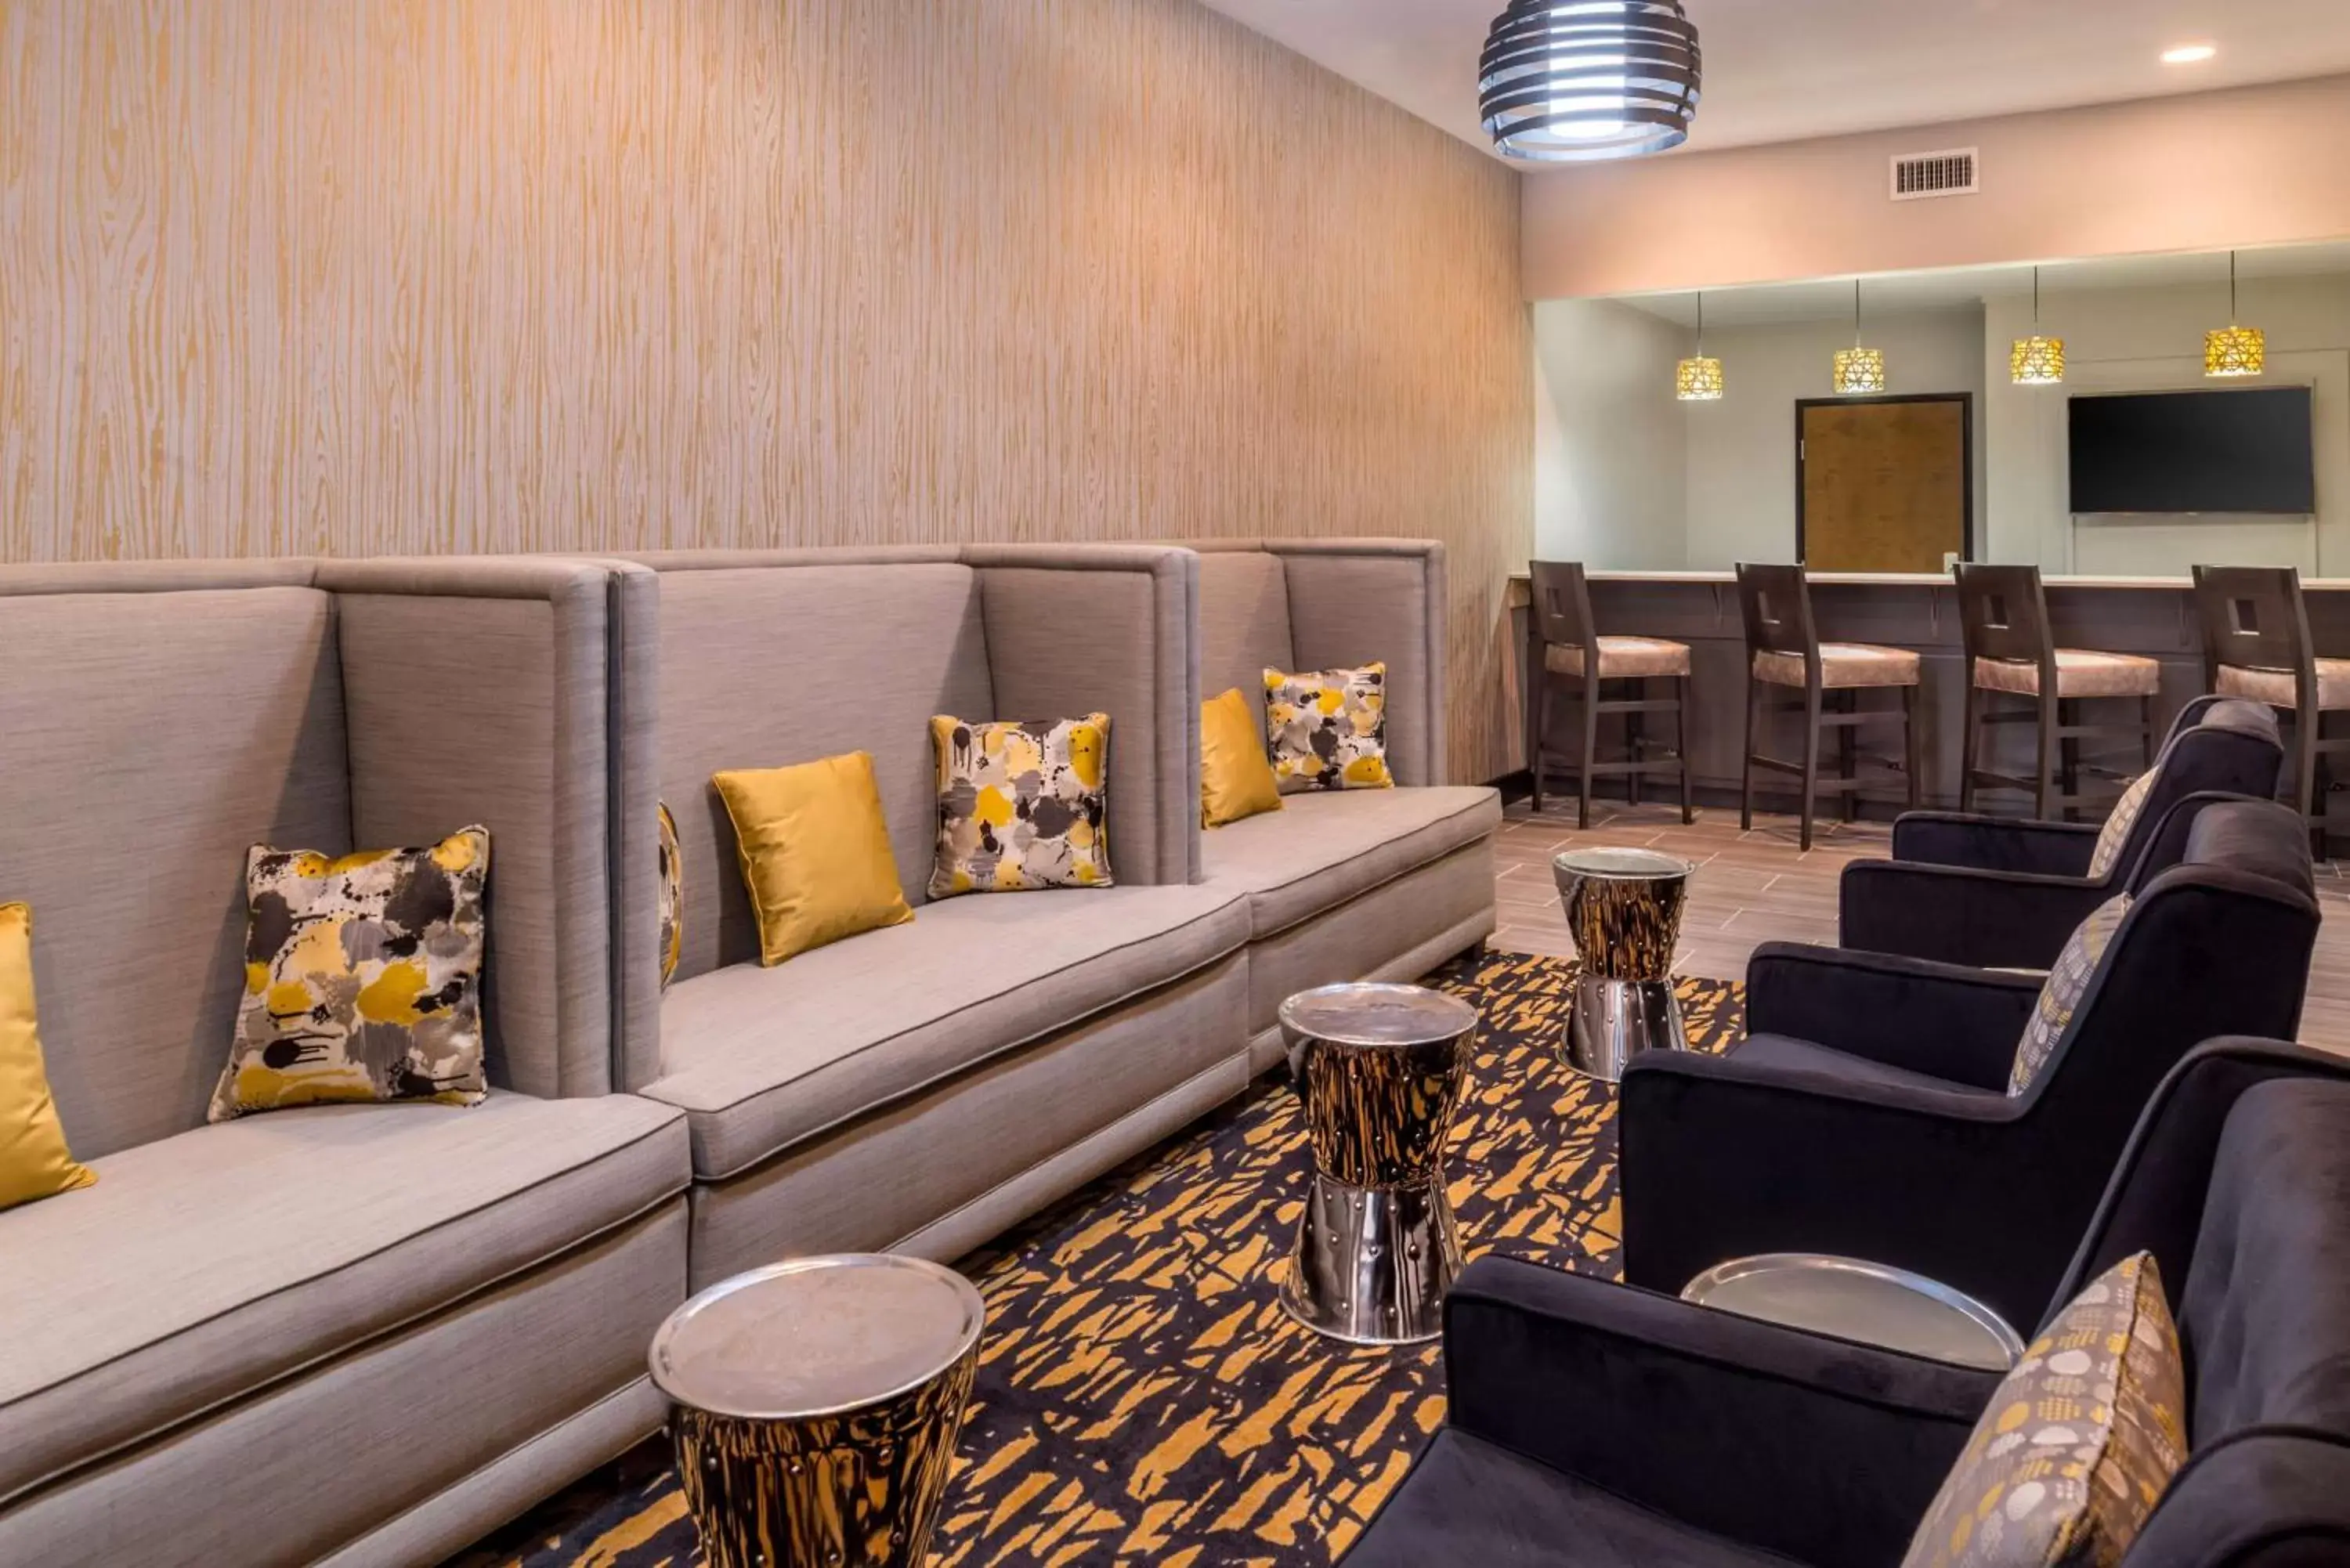 Lobby or reception, Lounge/Bar in Best Western Plus Regency Park